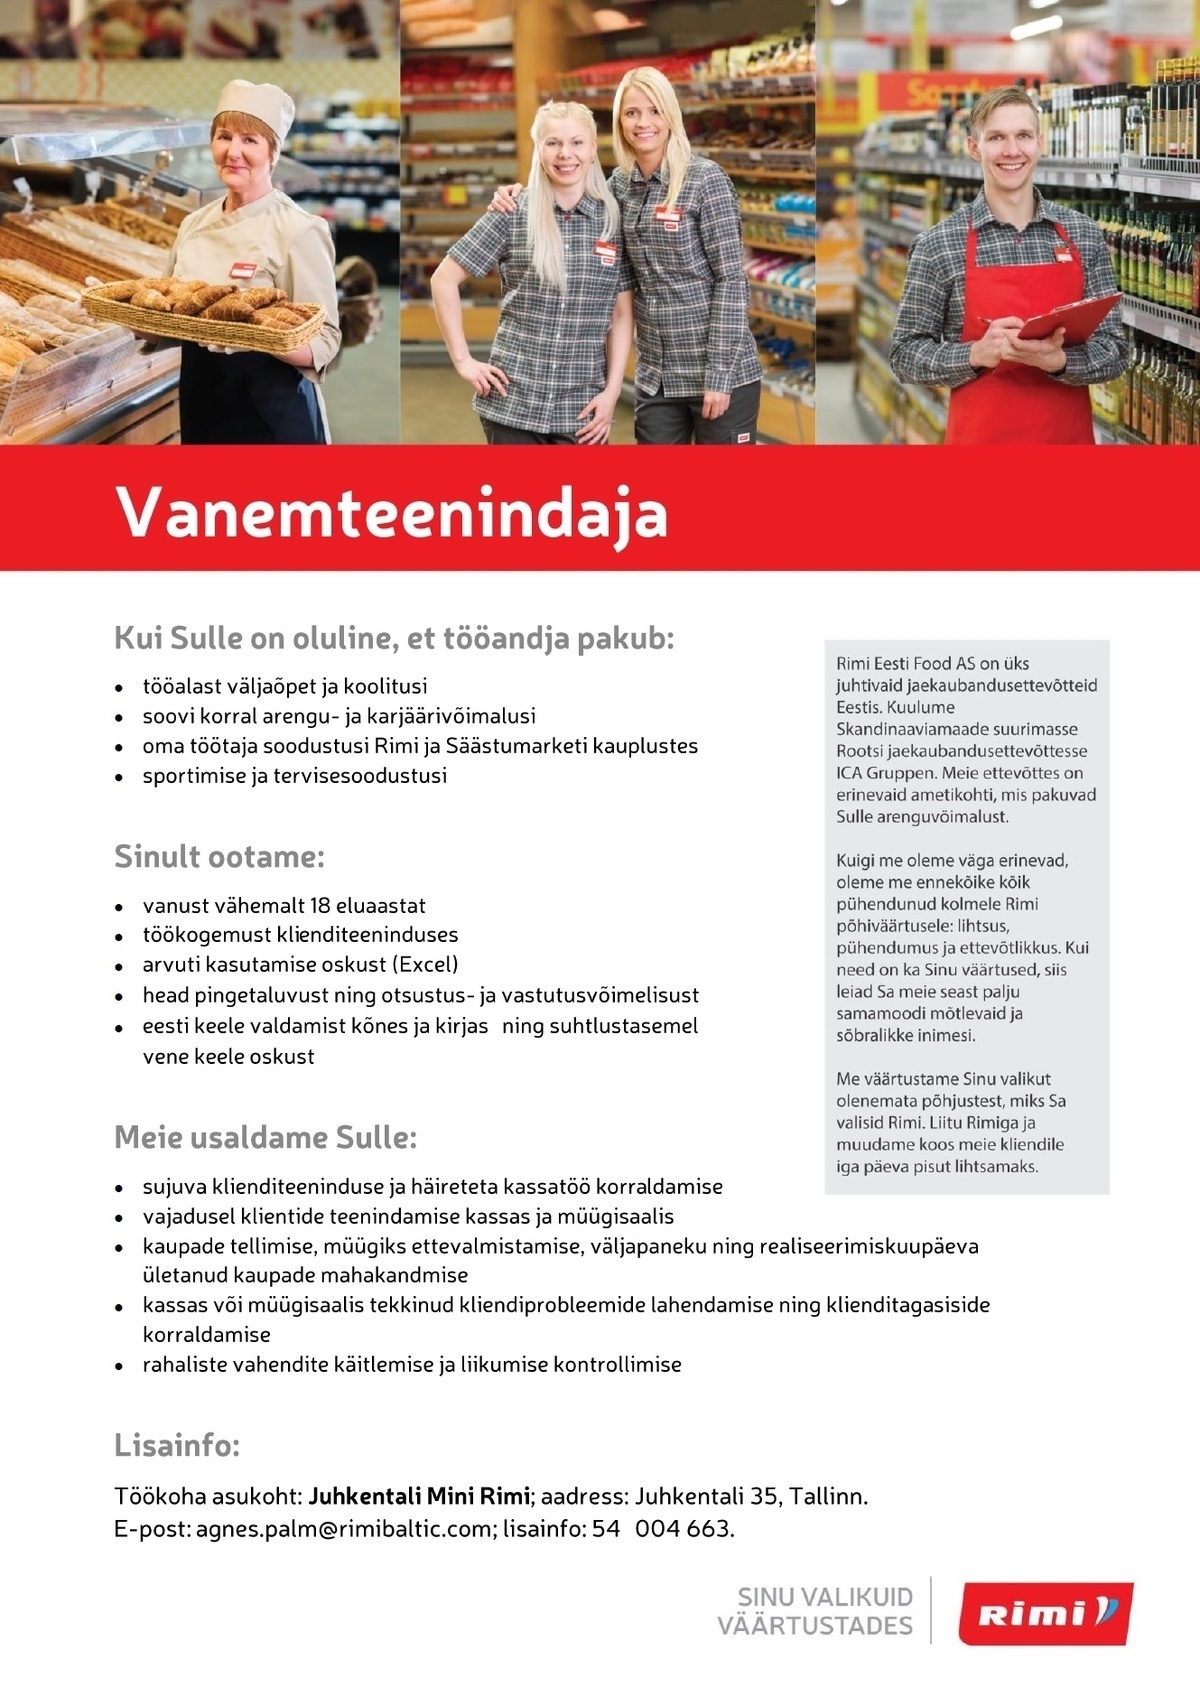 Rimi Eesti Food AS Vanemteenindaja - Juhkentali Mini Rimi